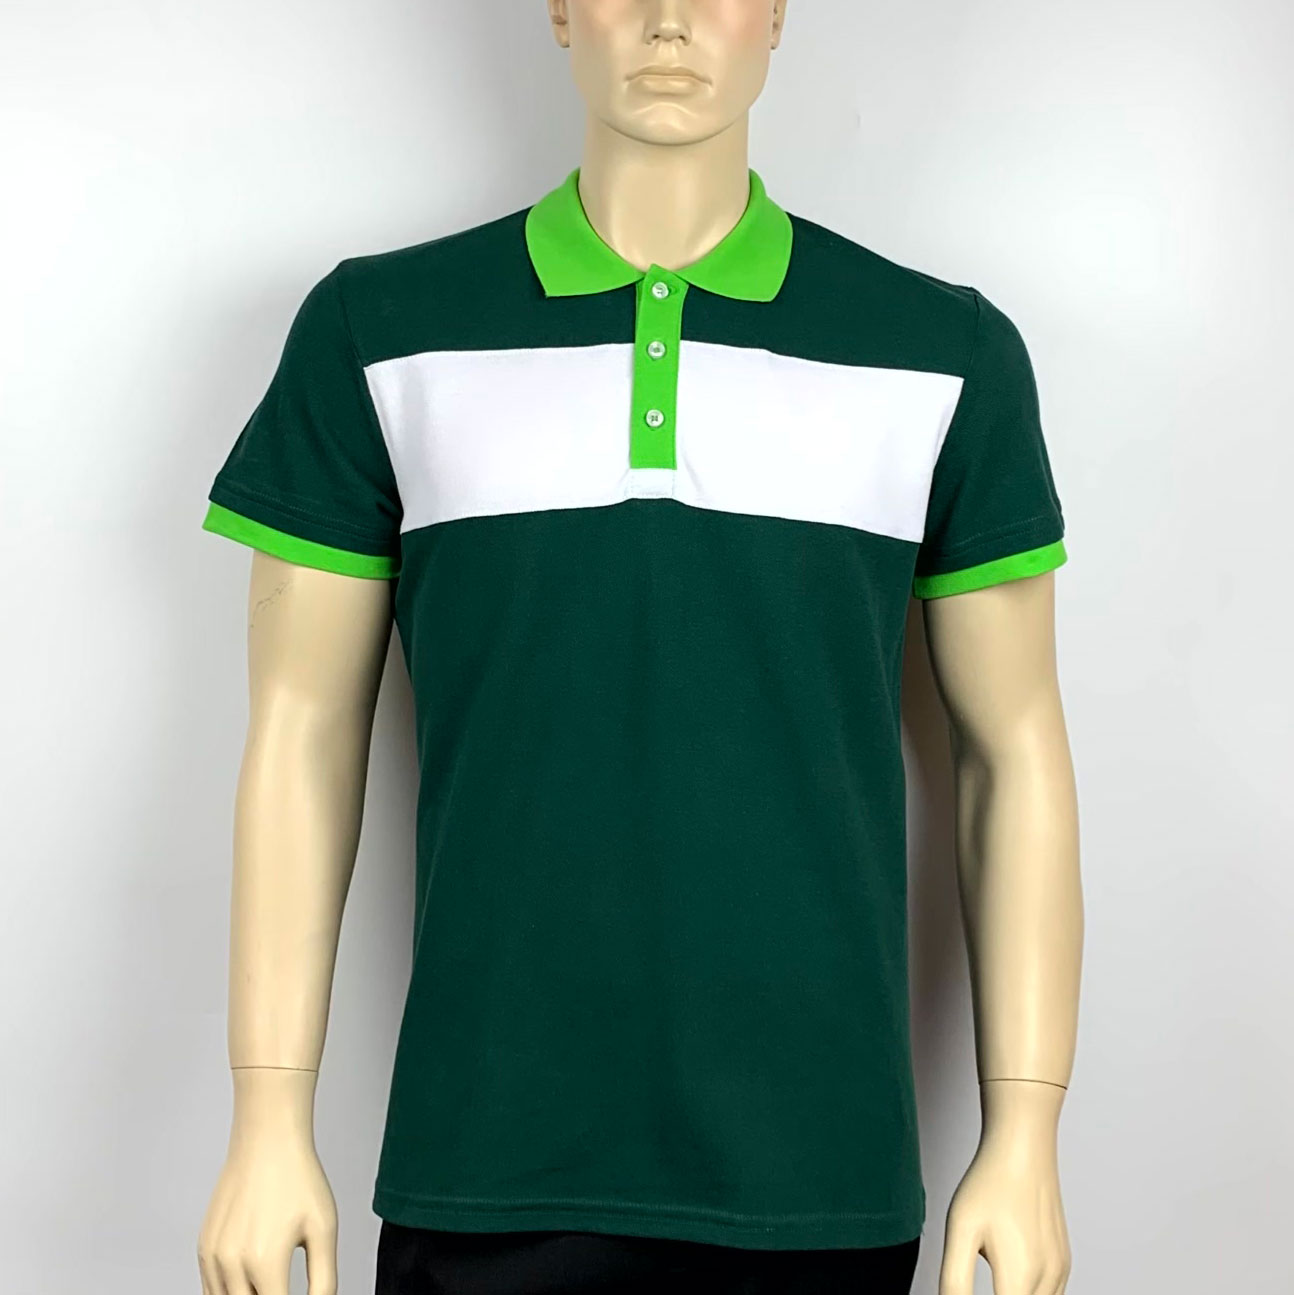 Футболка-поло має основний колір тканини - зелений. Контрастне оздоблення тканиною білого кольору виконано зверху на грудях.